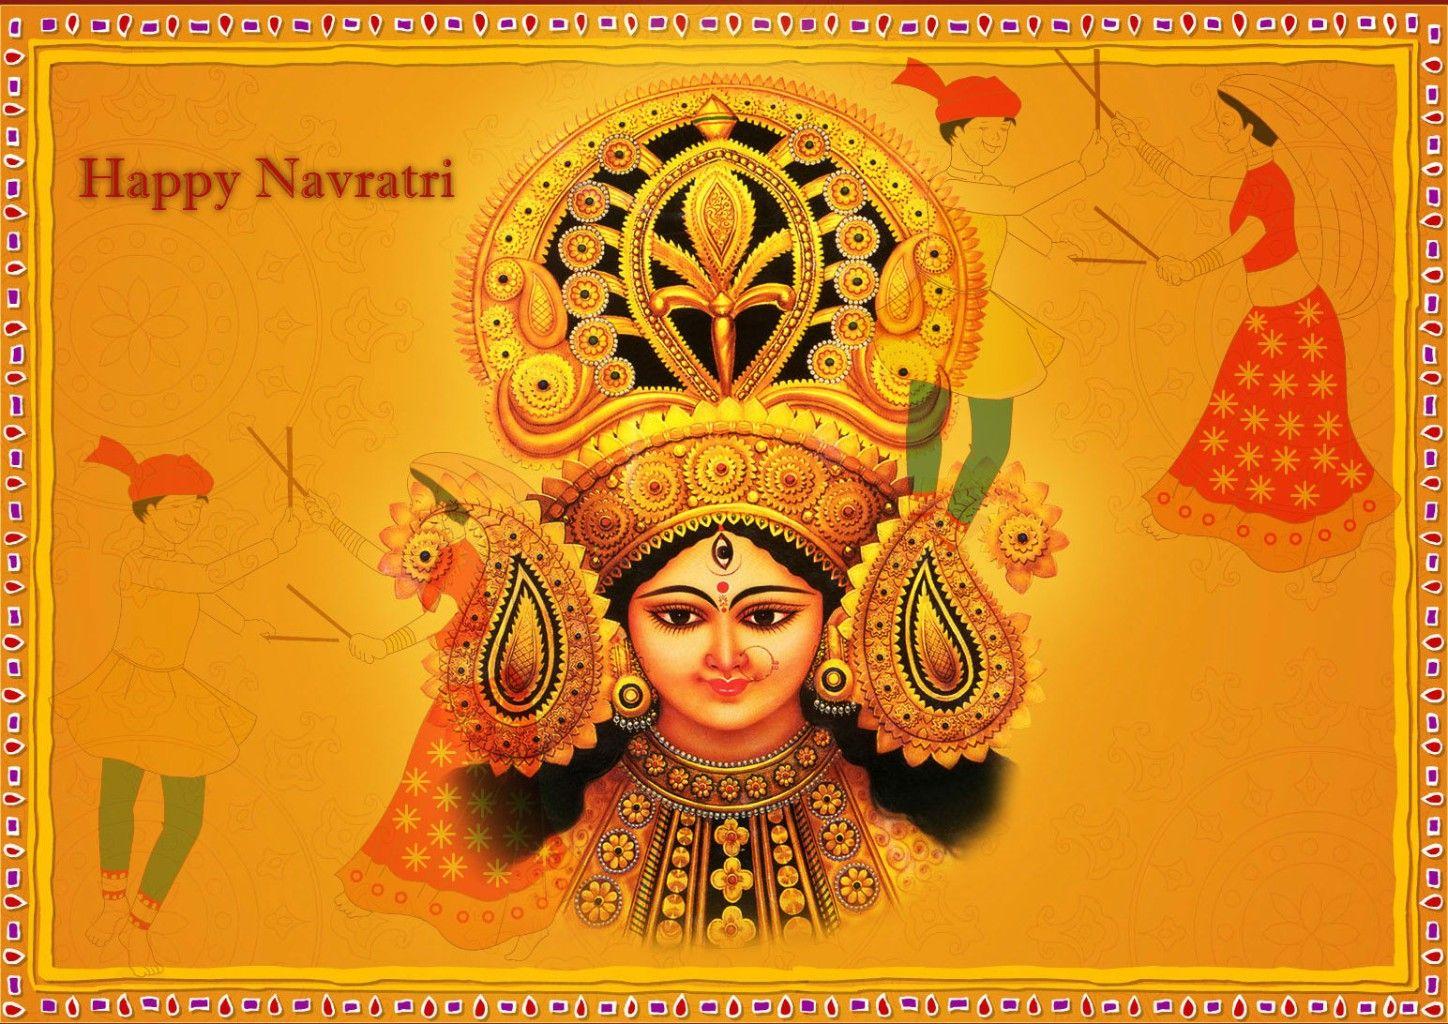 Chaitra Navratri Image HD. Maa Durga Navratri Wallpaper